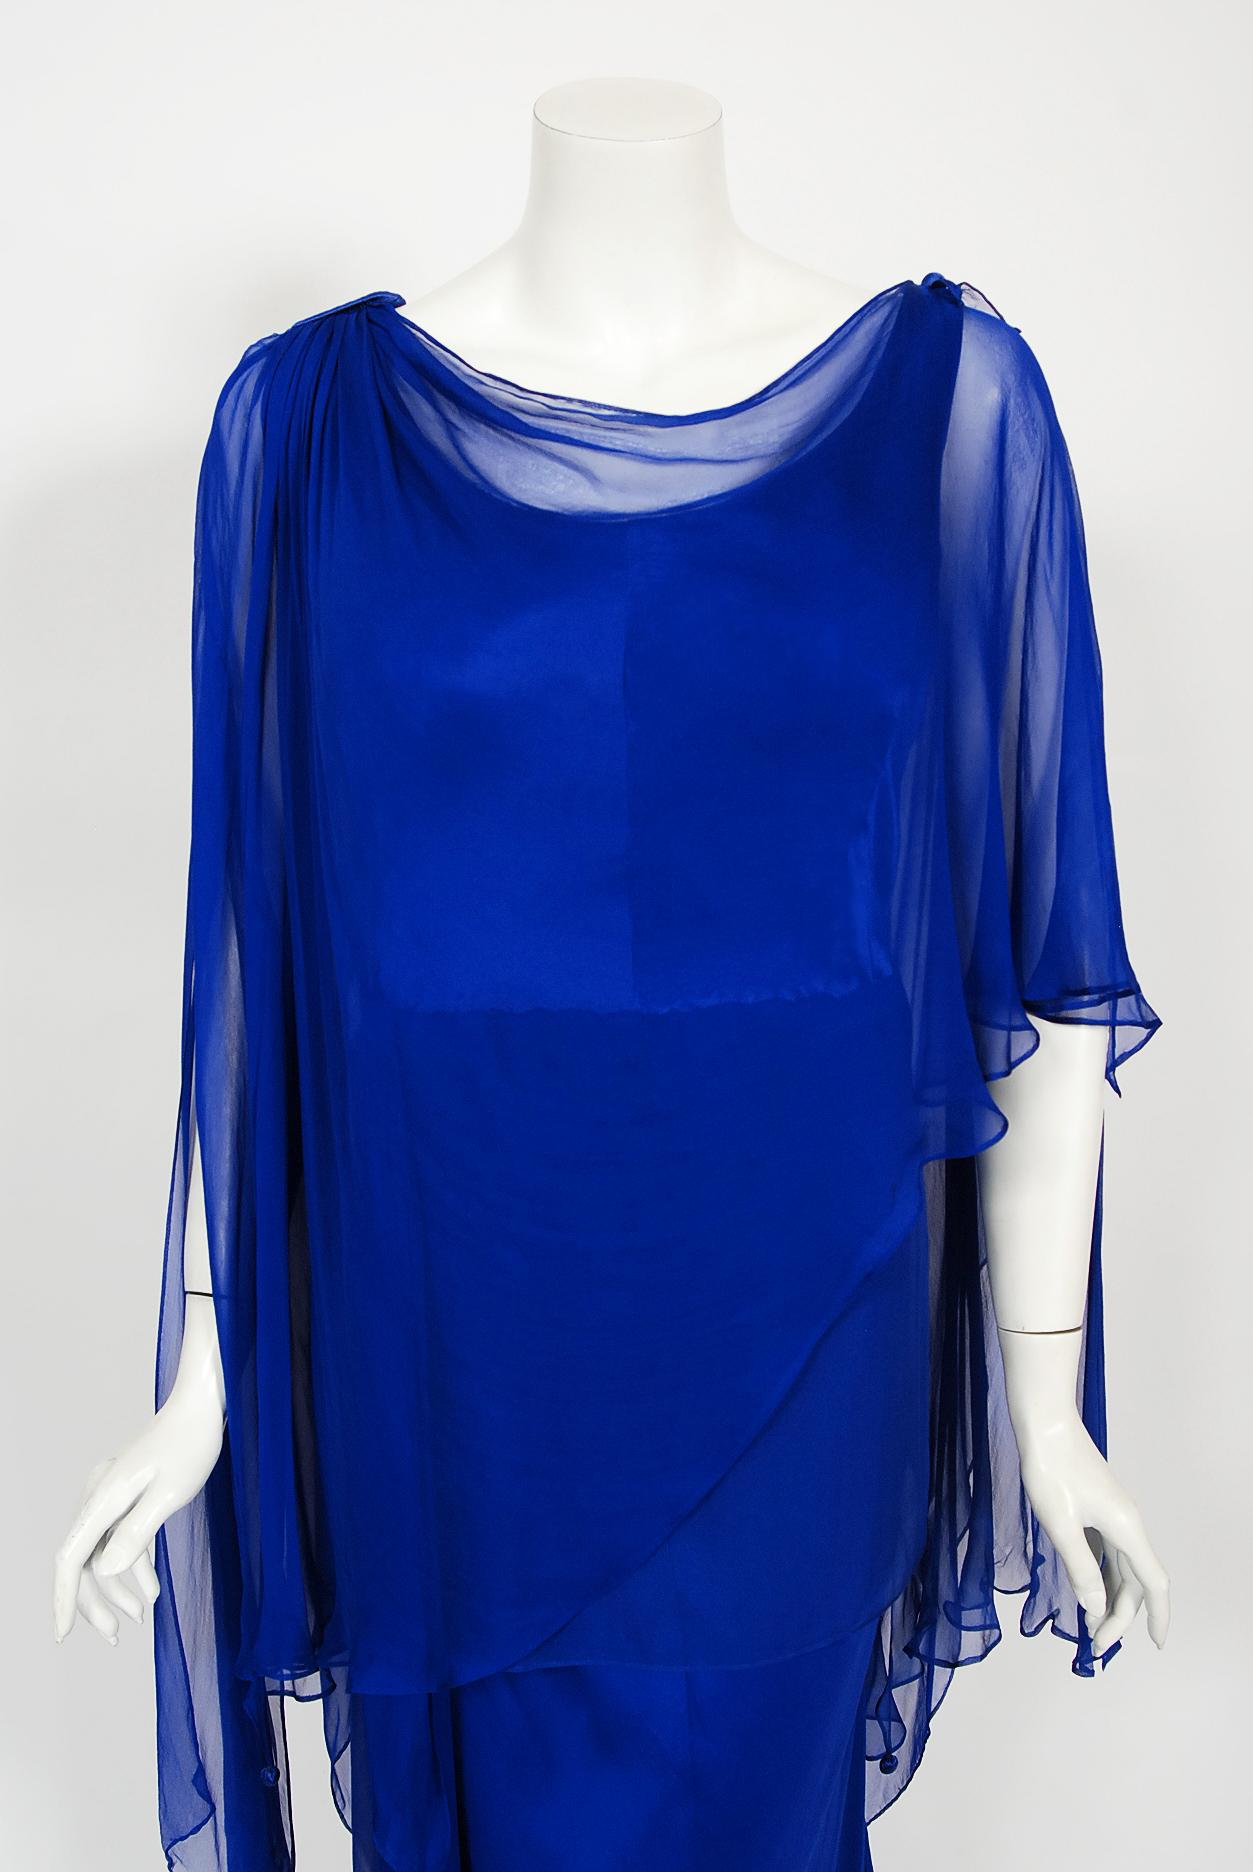 Une magnifique robe haute couture numérotée Givenchy en mousseline de soie bleu royal drapée datant de sa collection automne-hiver 1967. Cette robe de style caftan a été réalisée sur mesure pour une cliente de grande taille, ce qui est de plus en